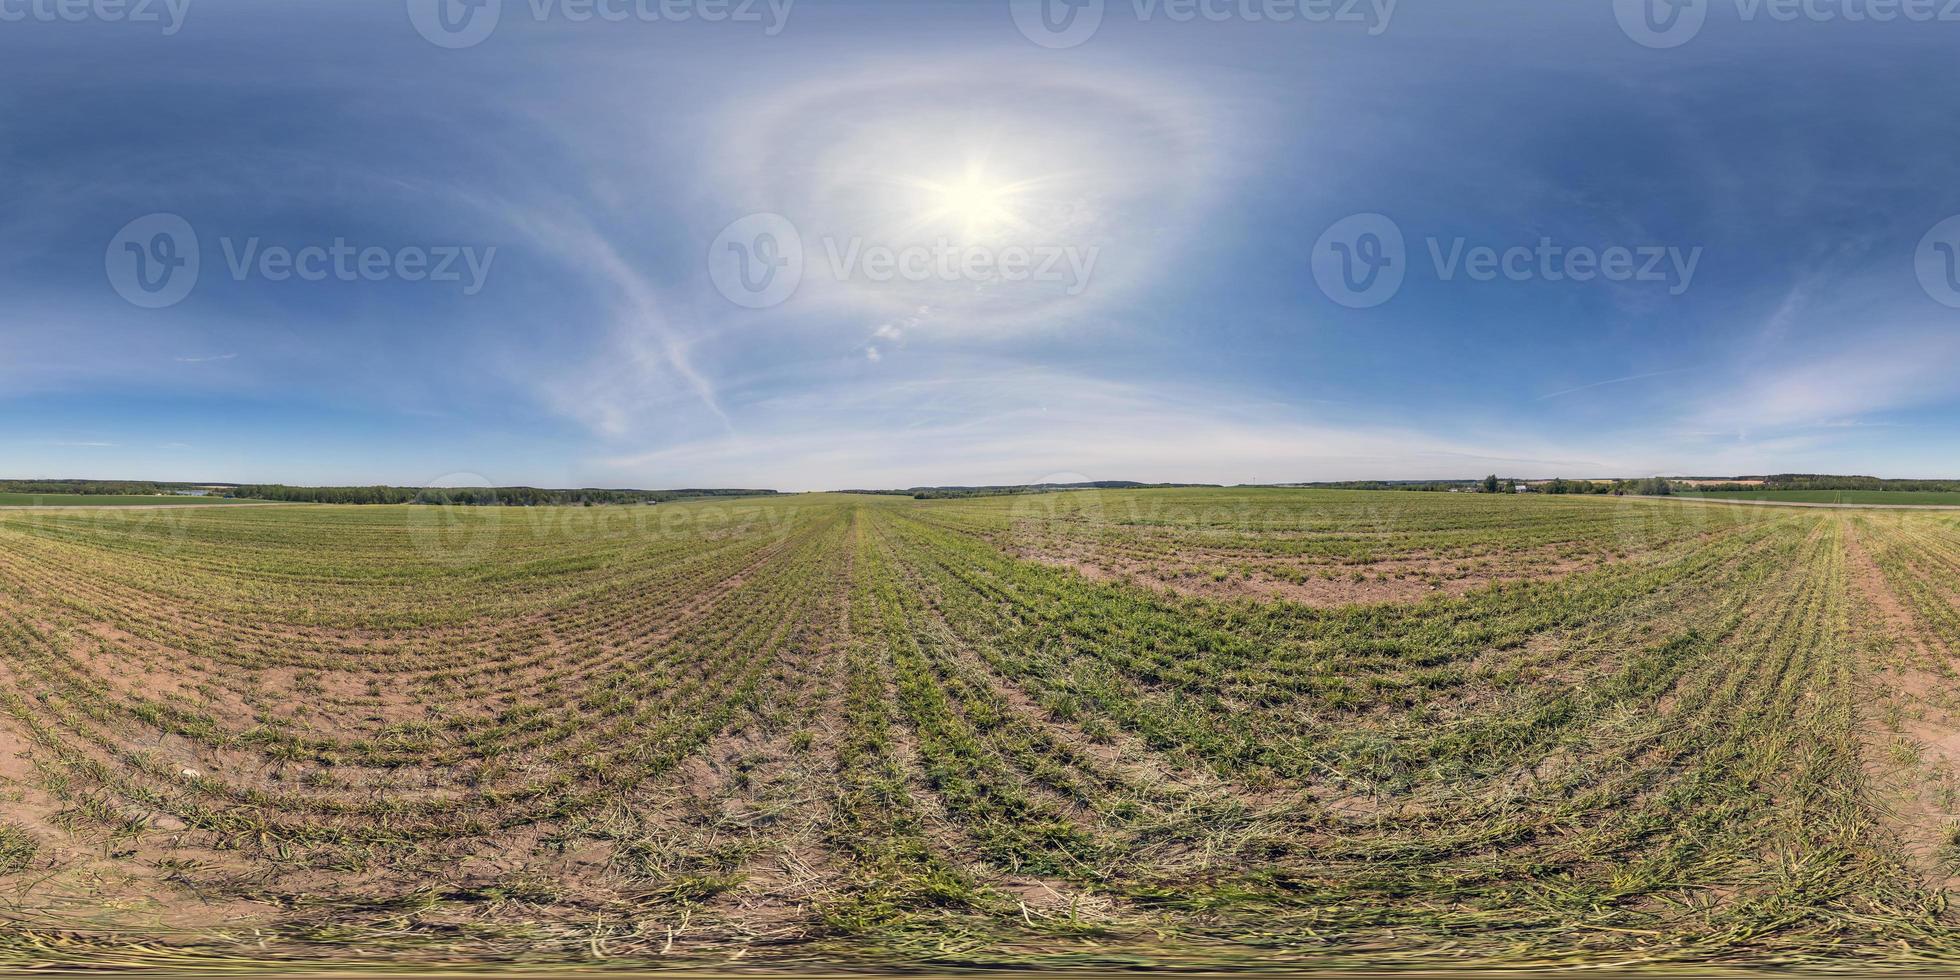 full sömlös sfärisk hdri-panorama 360 graders vinkelvy på bland fält på vårdagen med gloria på klar himmel i ekvirektangulär projektion, redo för vr ar virtual reality-innehåll foto